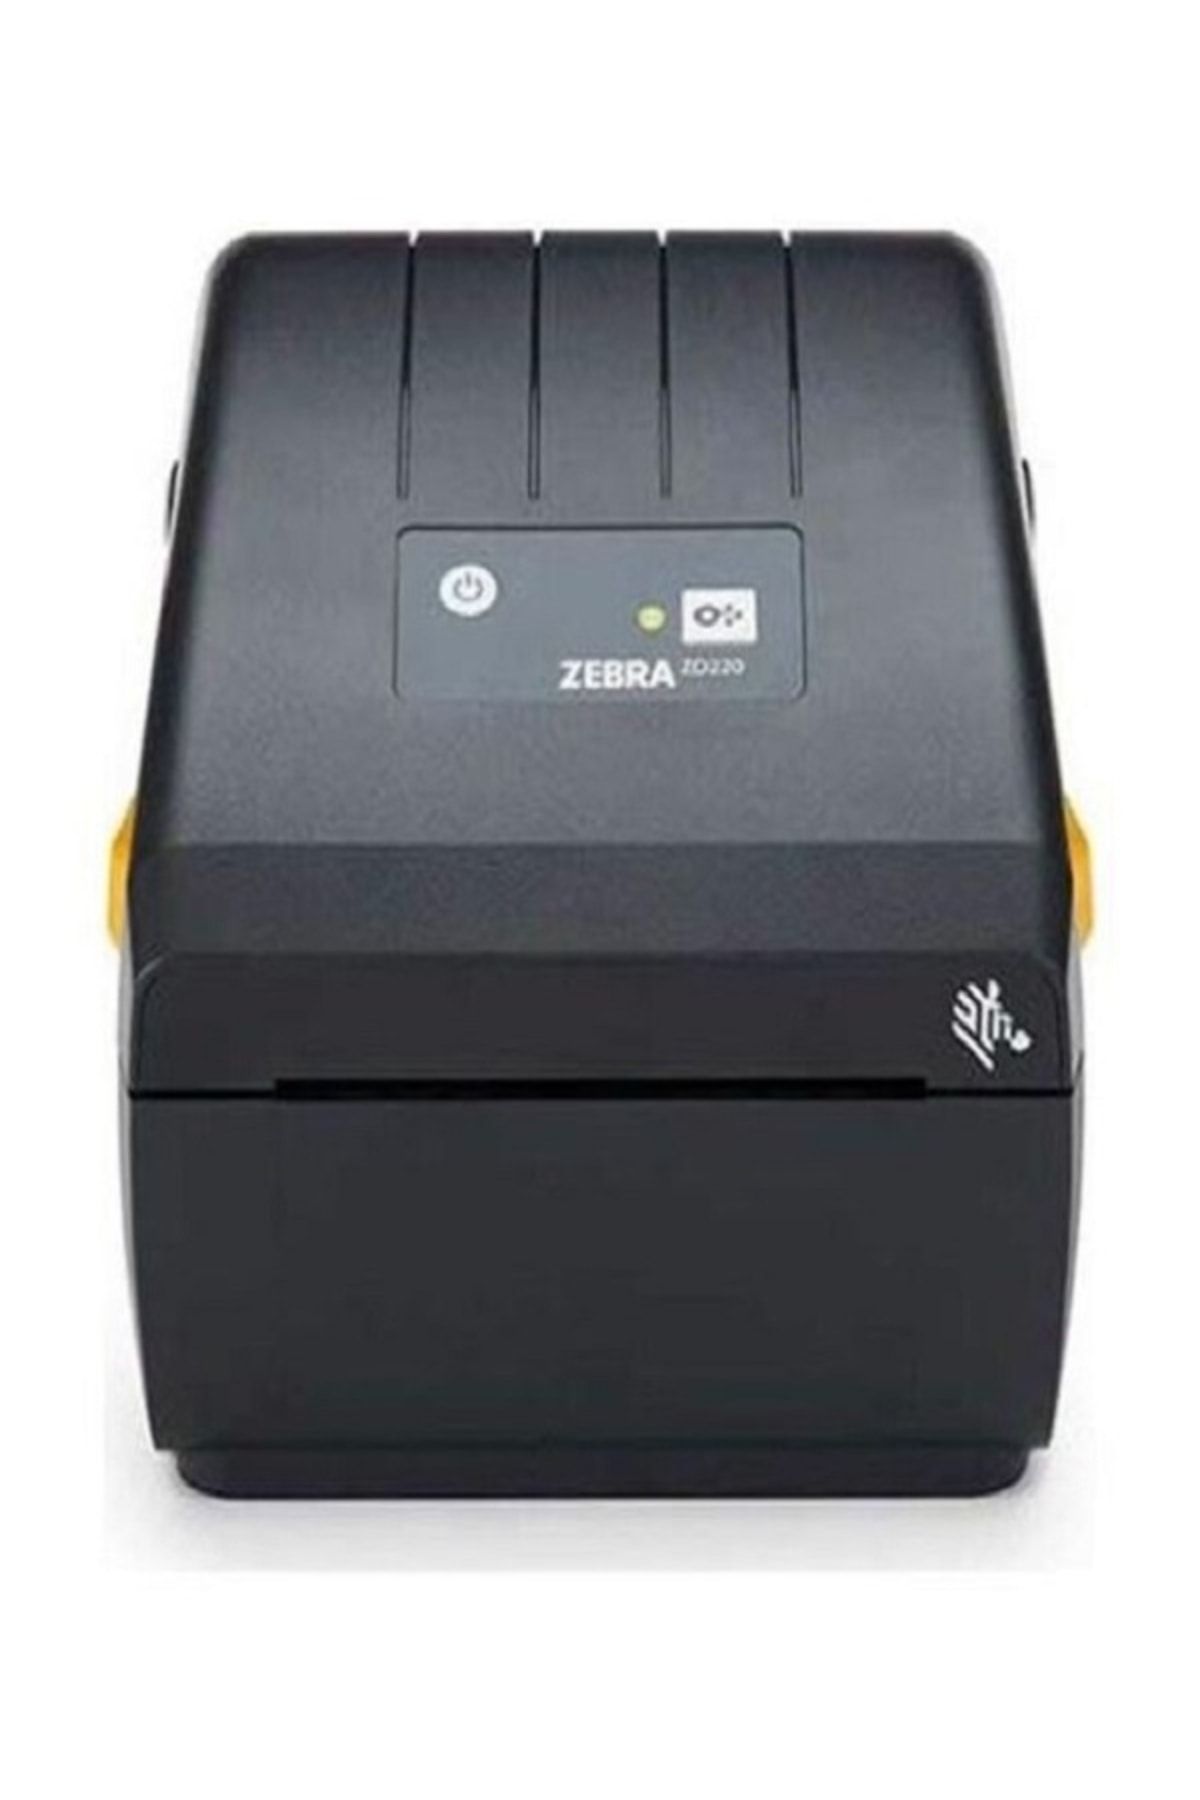 Zebra Zd220d Barkod Etiket Yazıcısı Fiyatı Yorumları Trendyol 9769